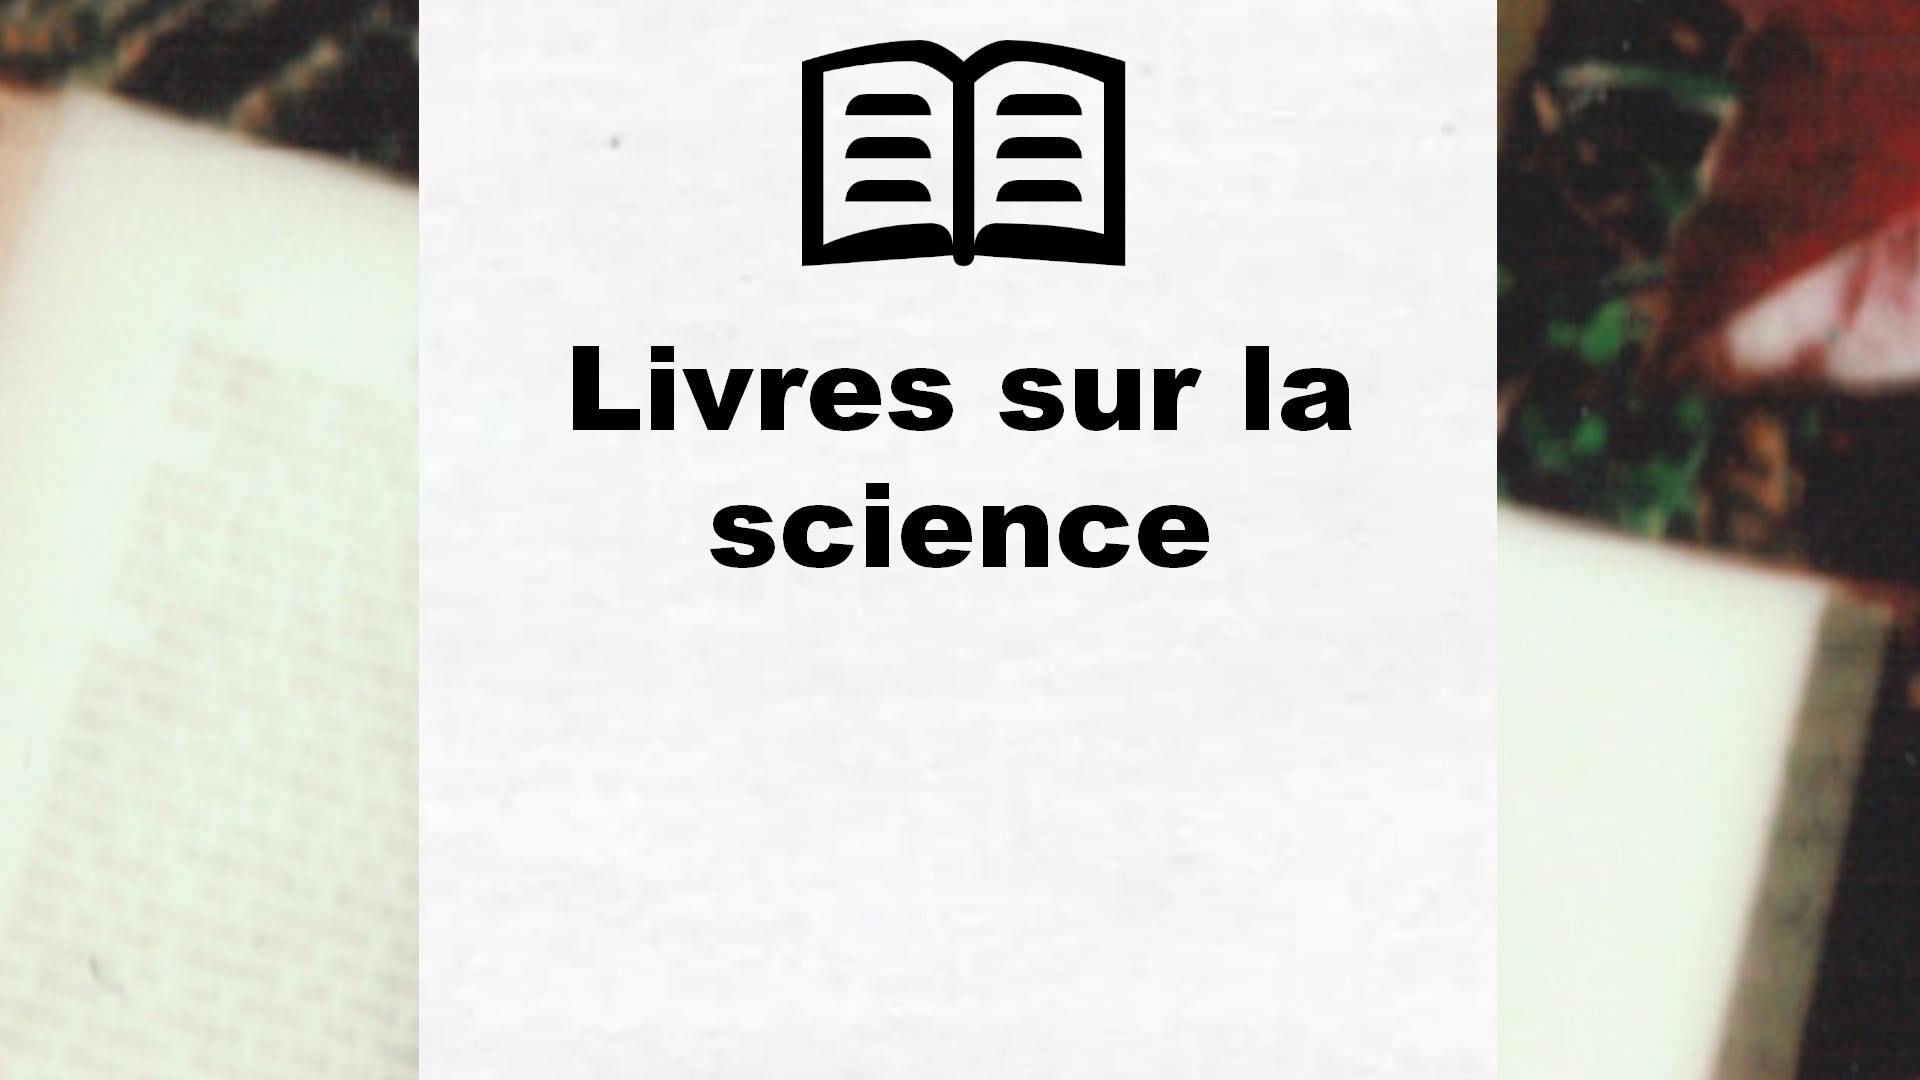 Livres sur la science